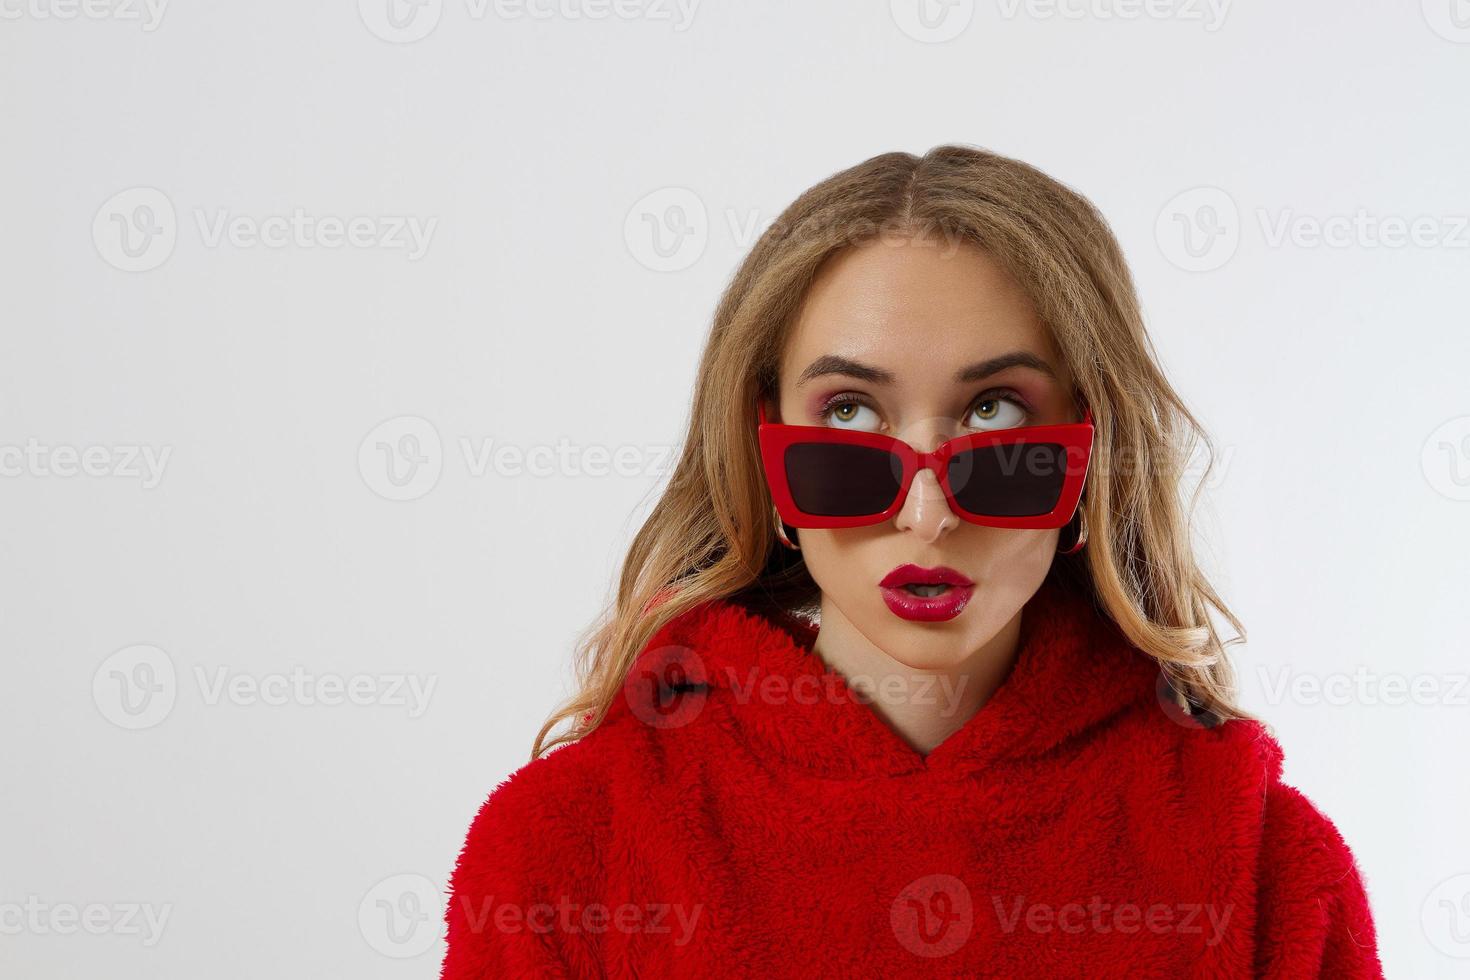 close-up vrouw gezicht met rode lippen, zonnebril hoodie geïsoleerd op een witte achtergrond. modieuze meisje in stijlvolle outfit. make-up, schoonheidsconcept. winter herfst kleding. schok opgewonden vrouwelijk gezicht. detailopname foto